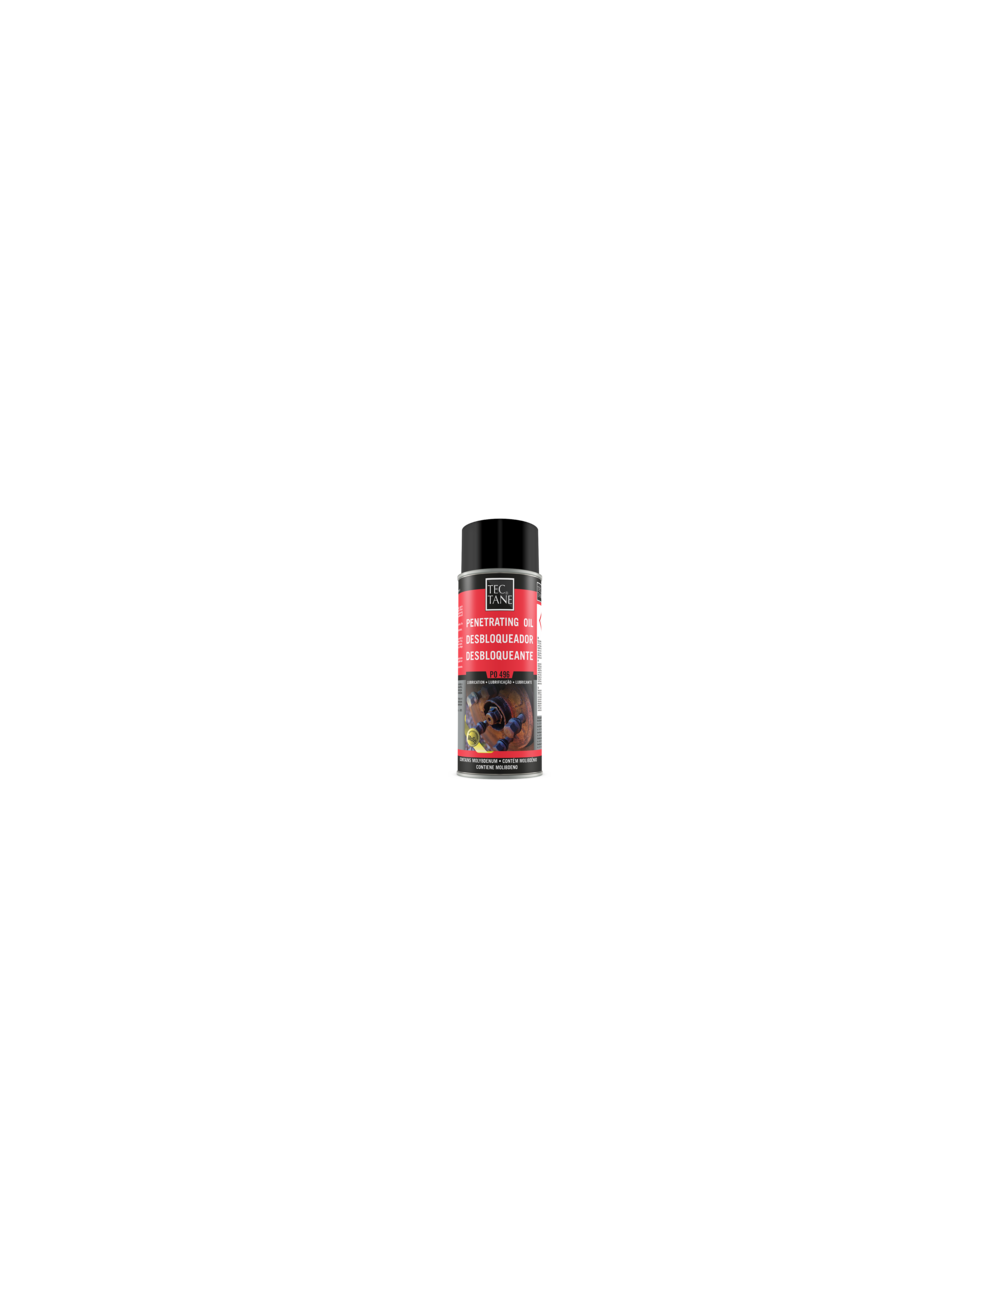 Spray Desbloqueador PO 496 - 400 ml Tectane